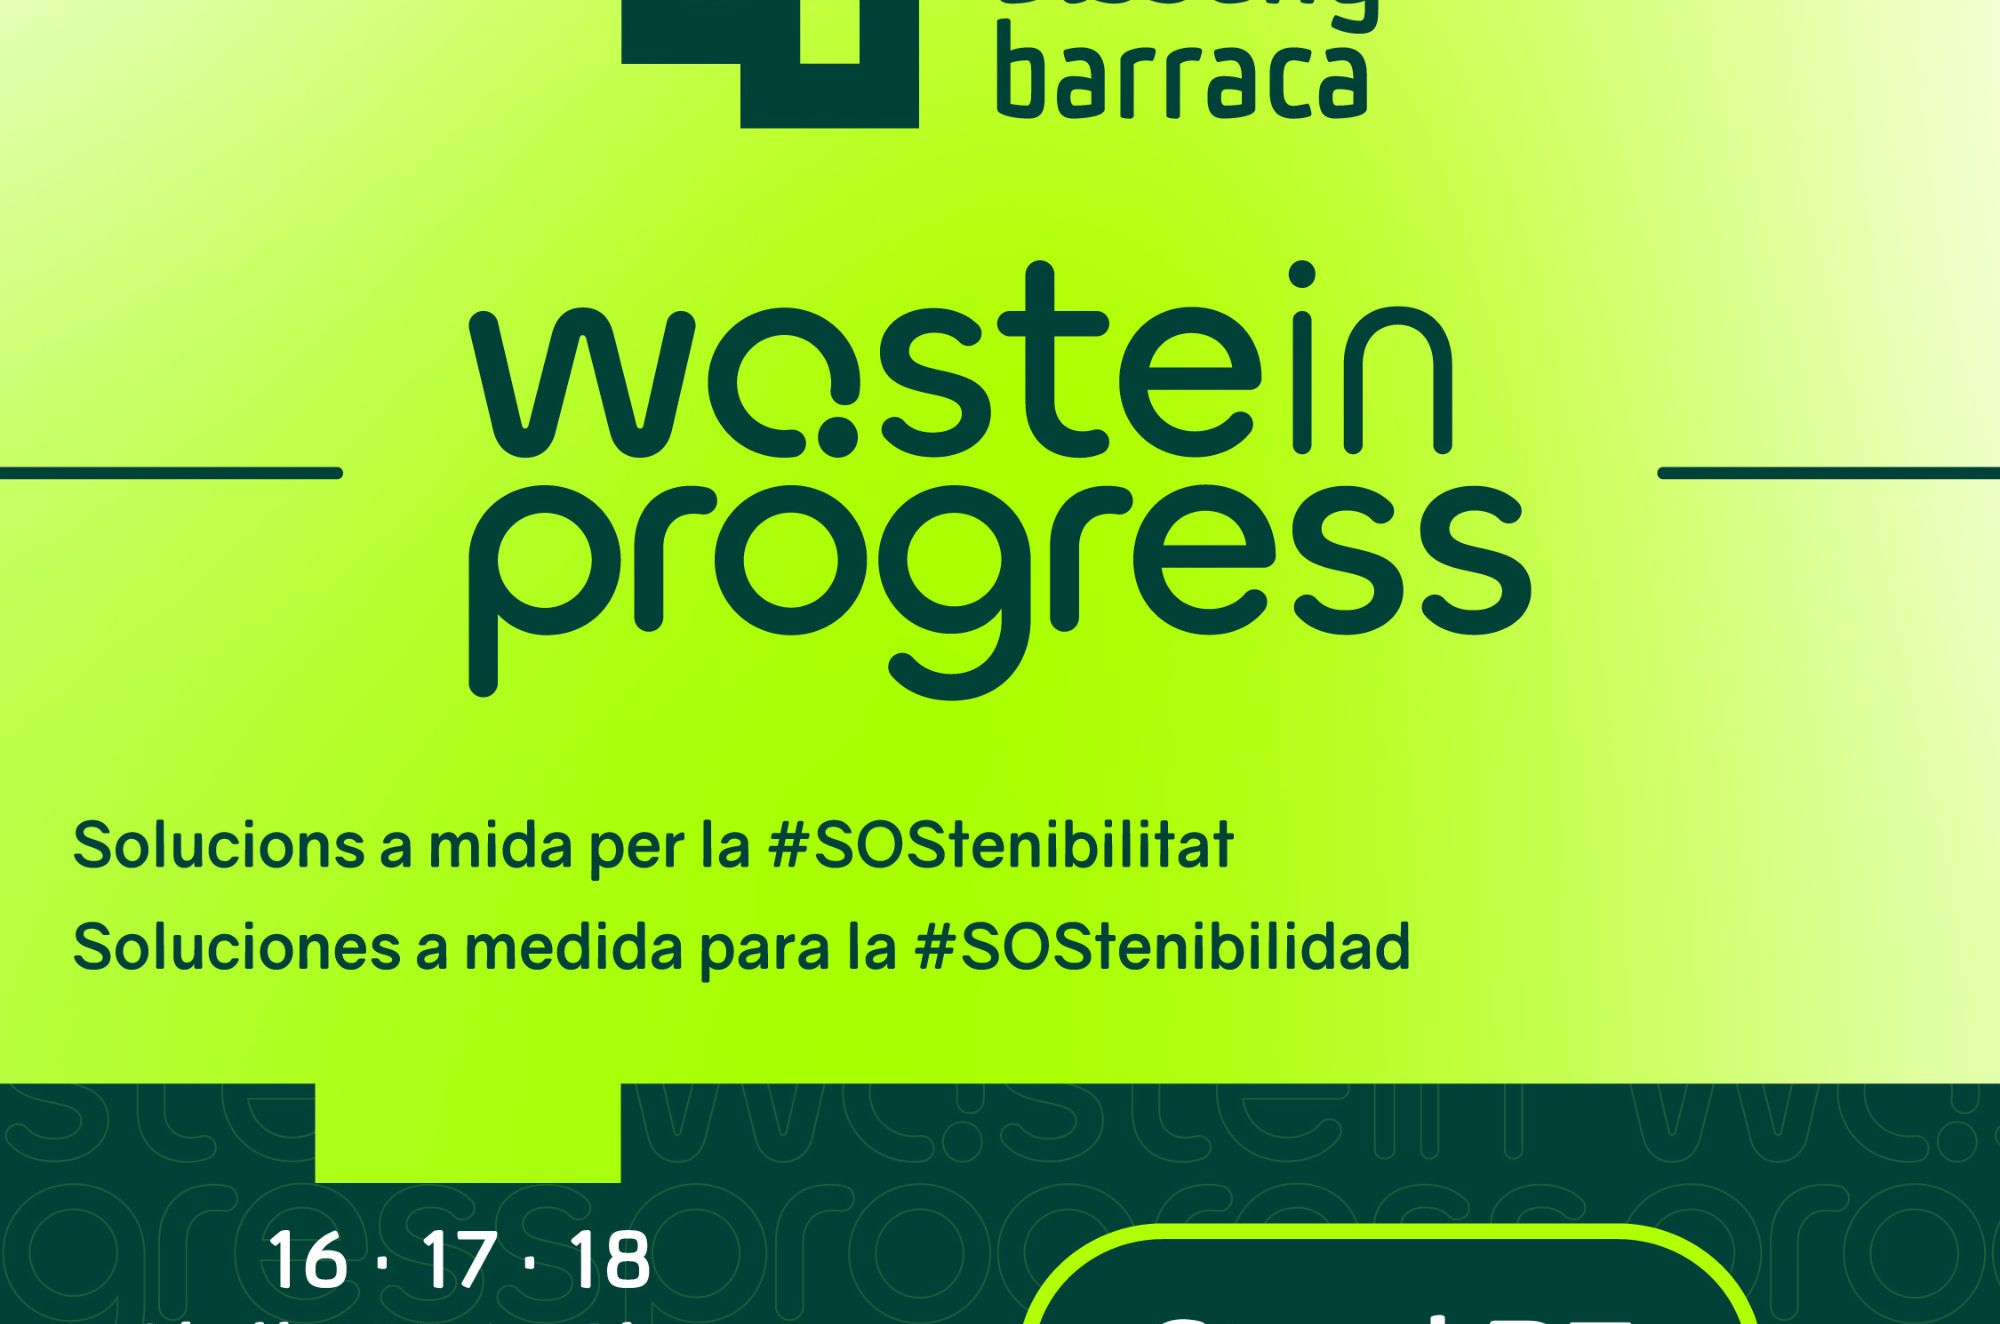 Disseny Barraca estar presente en la 6 edicin de Wasteinprogress